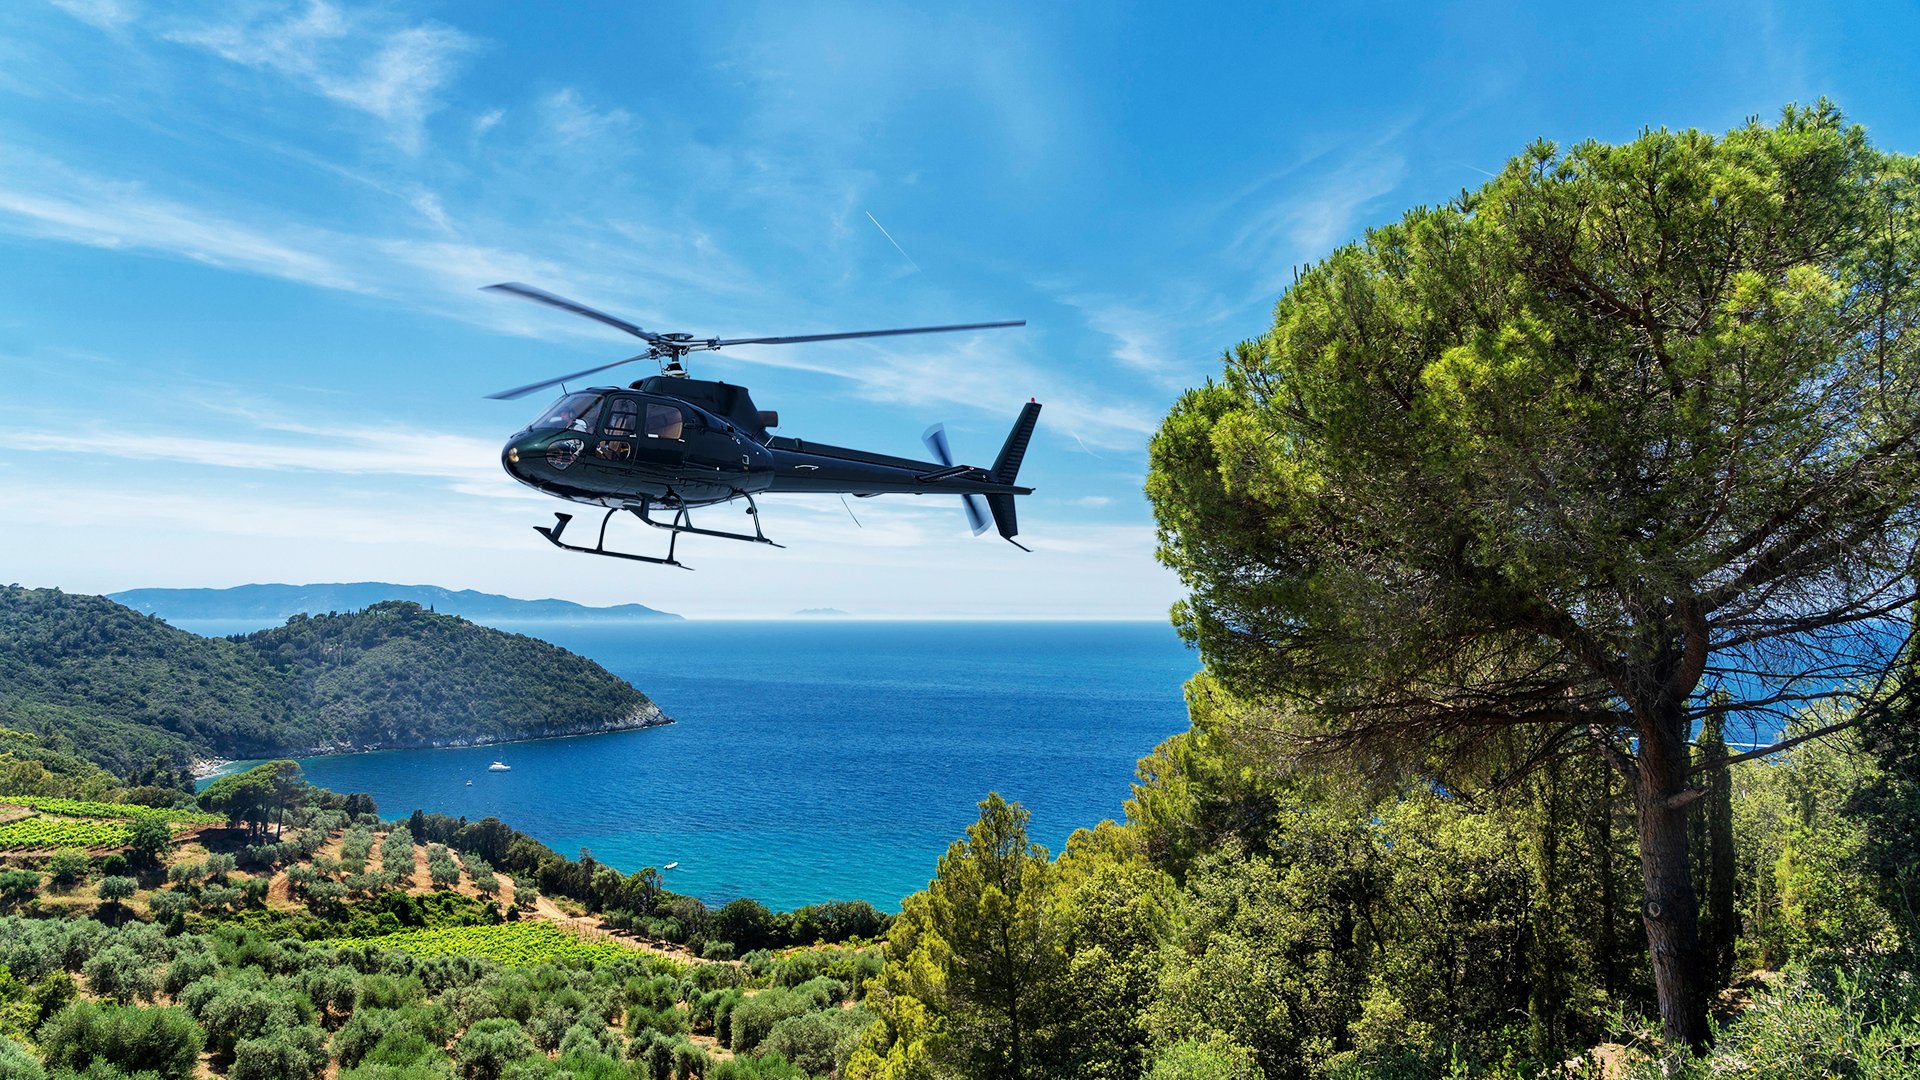 Un'esperienza unica in elicottero per osservare dall’alto i luoghi più iconici della Toscana